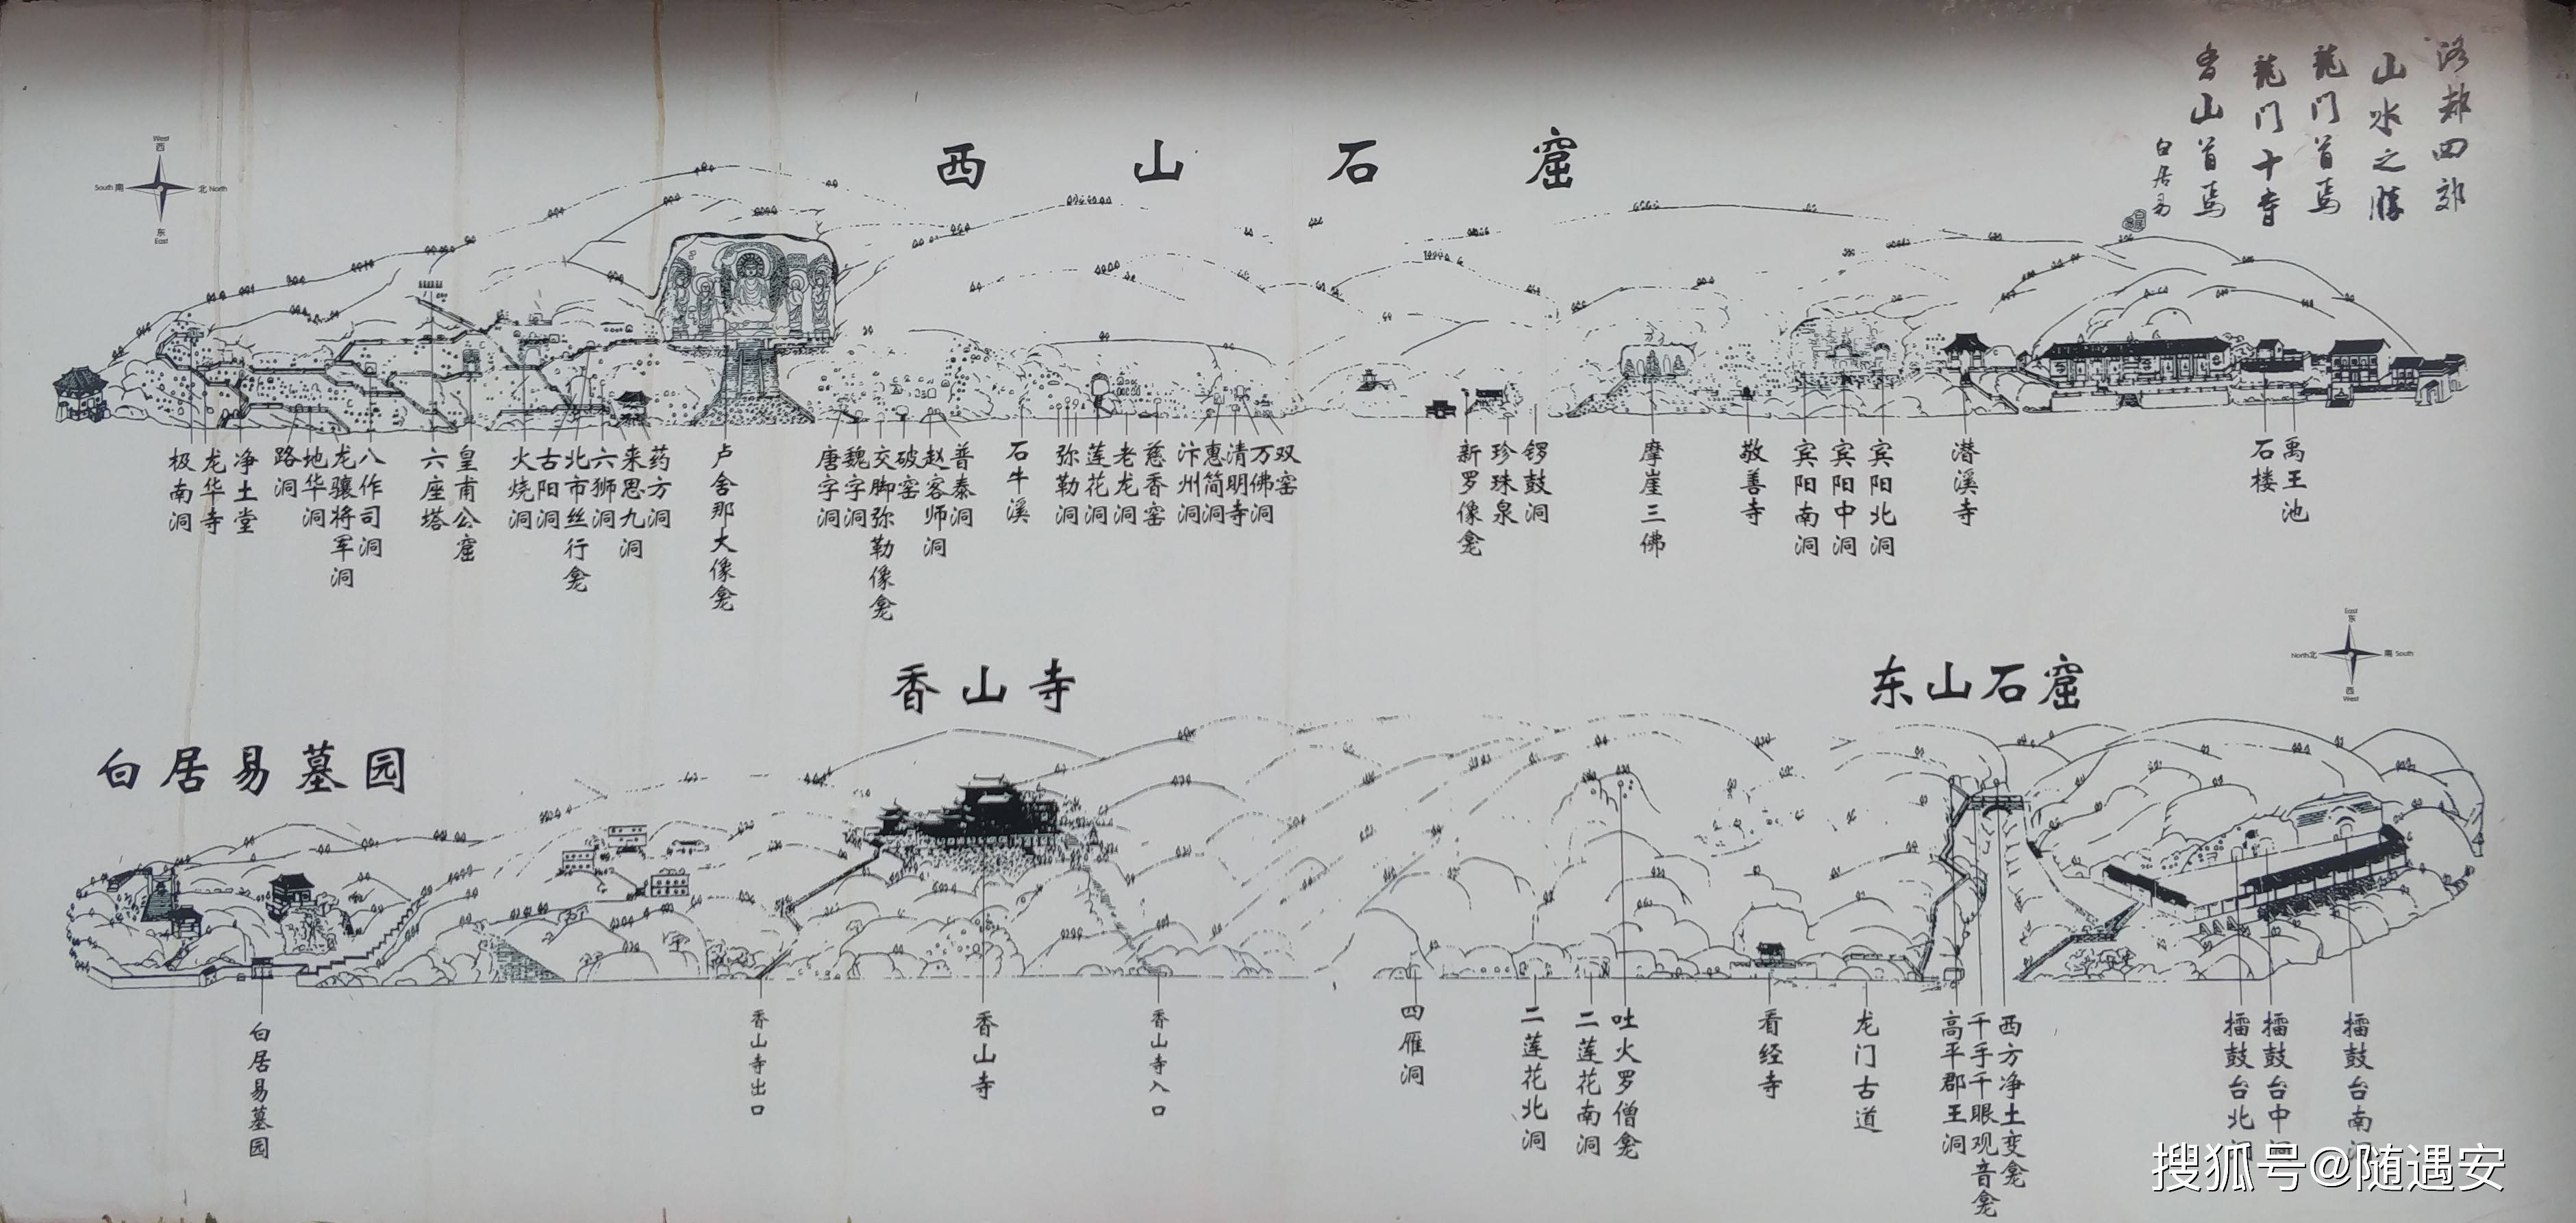 龙门石窟地图手绘图片